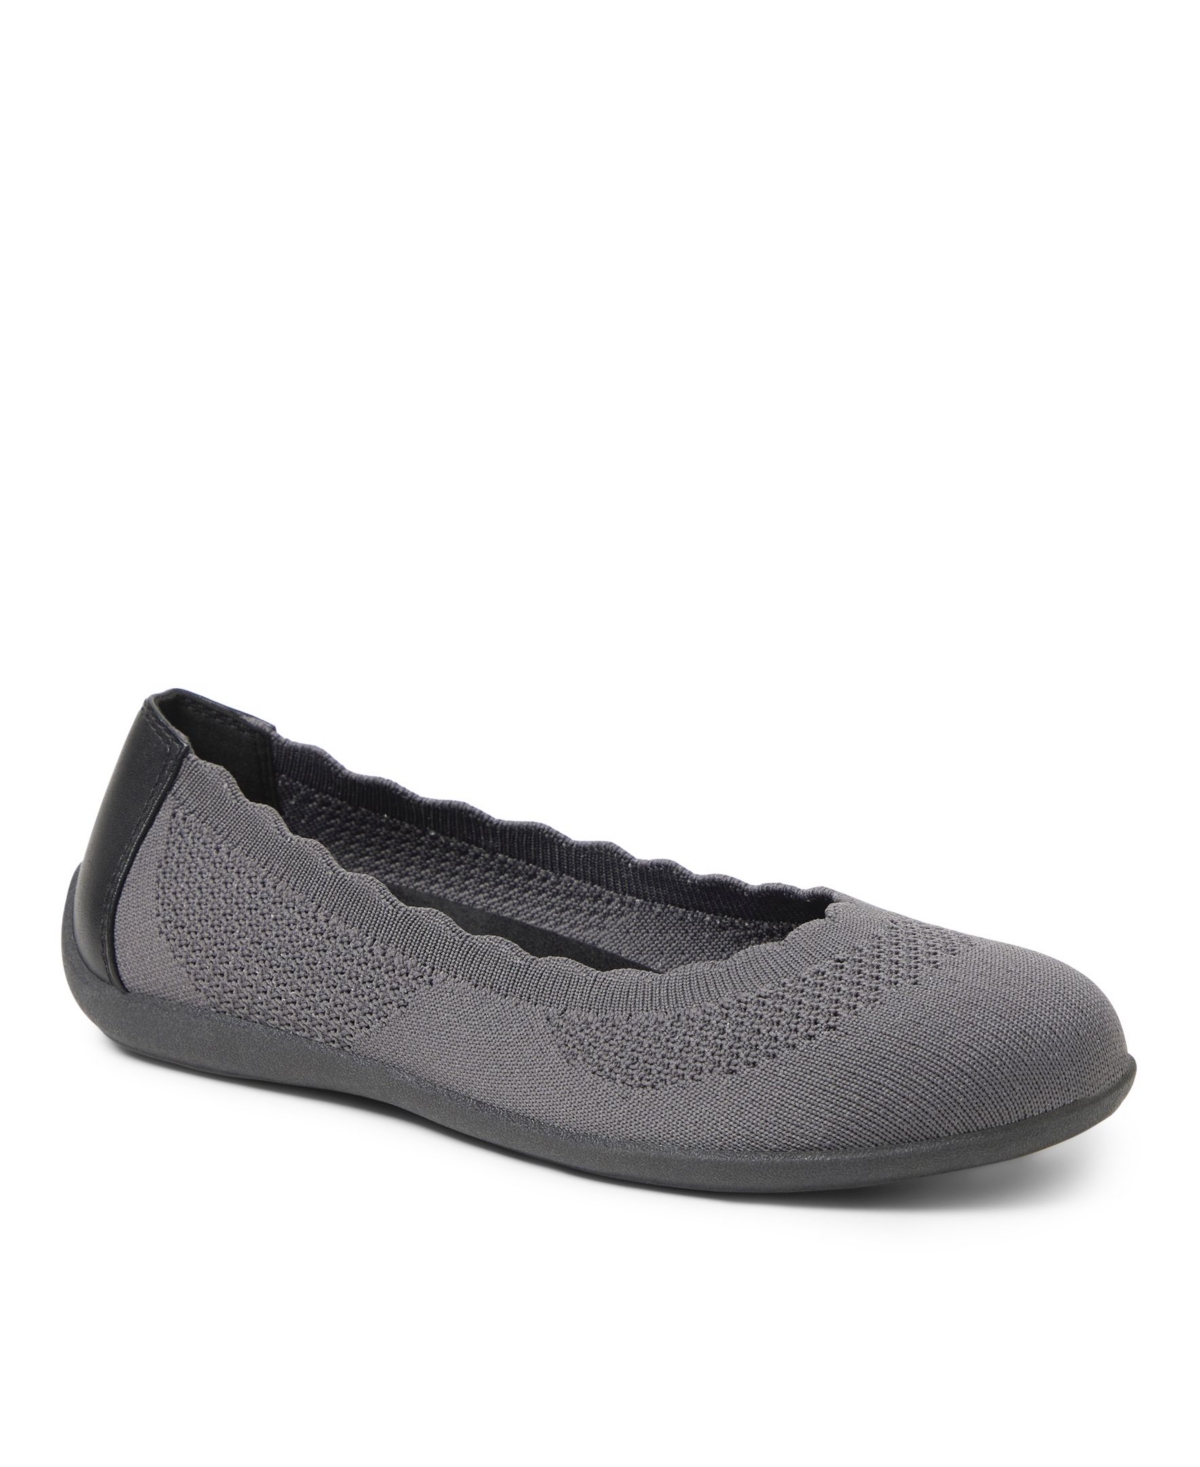 Dearfoams Original Comfort by Dearfoams Women's Misty Ballet Flats Women's Shoes